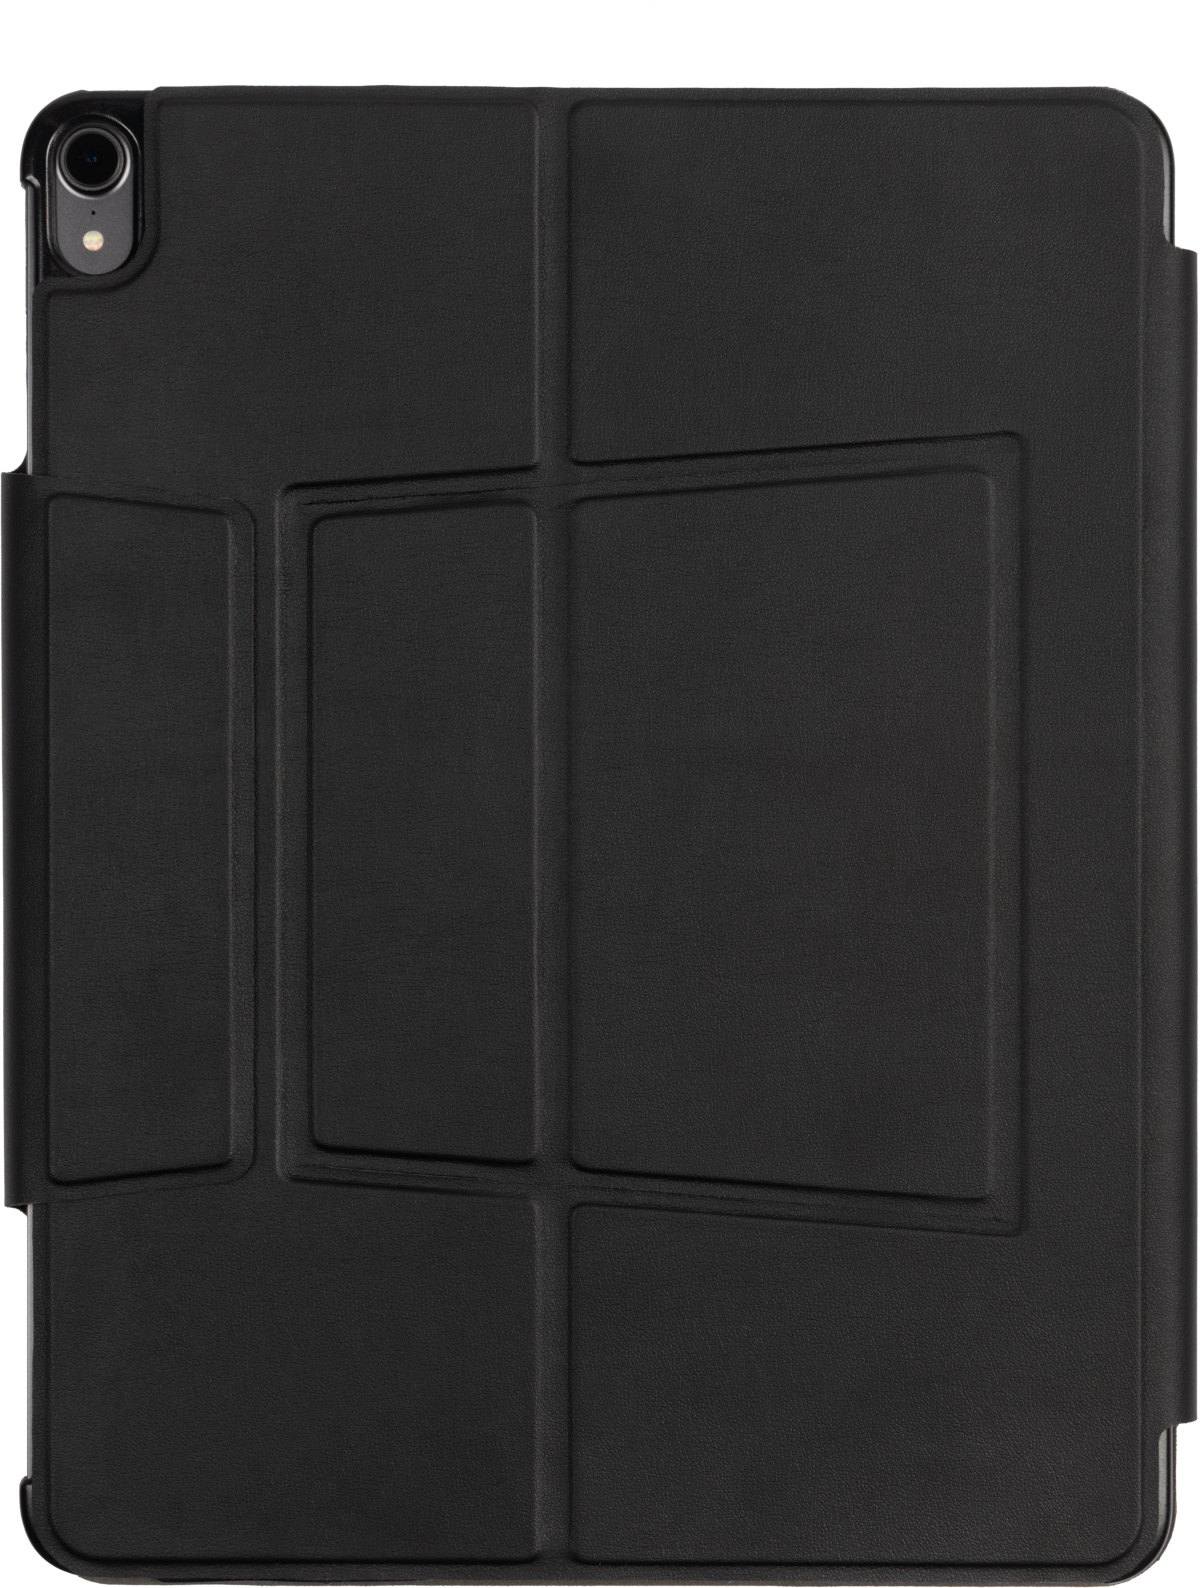 Schwarz PU Leather, Tastatur-Case QWERTZ COVERS Apple für GECKO Bookcover